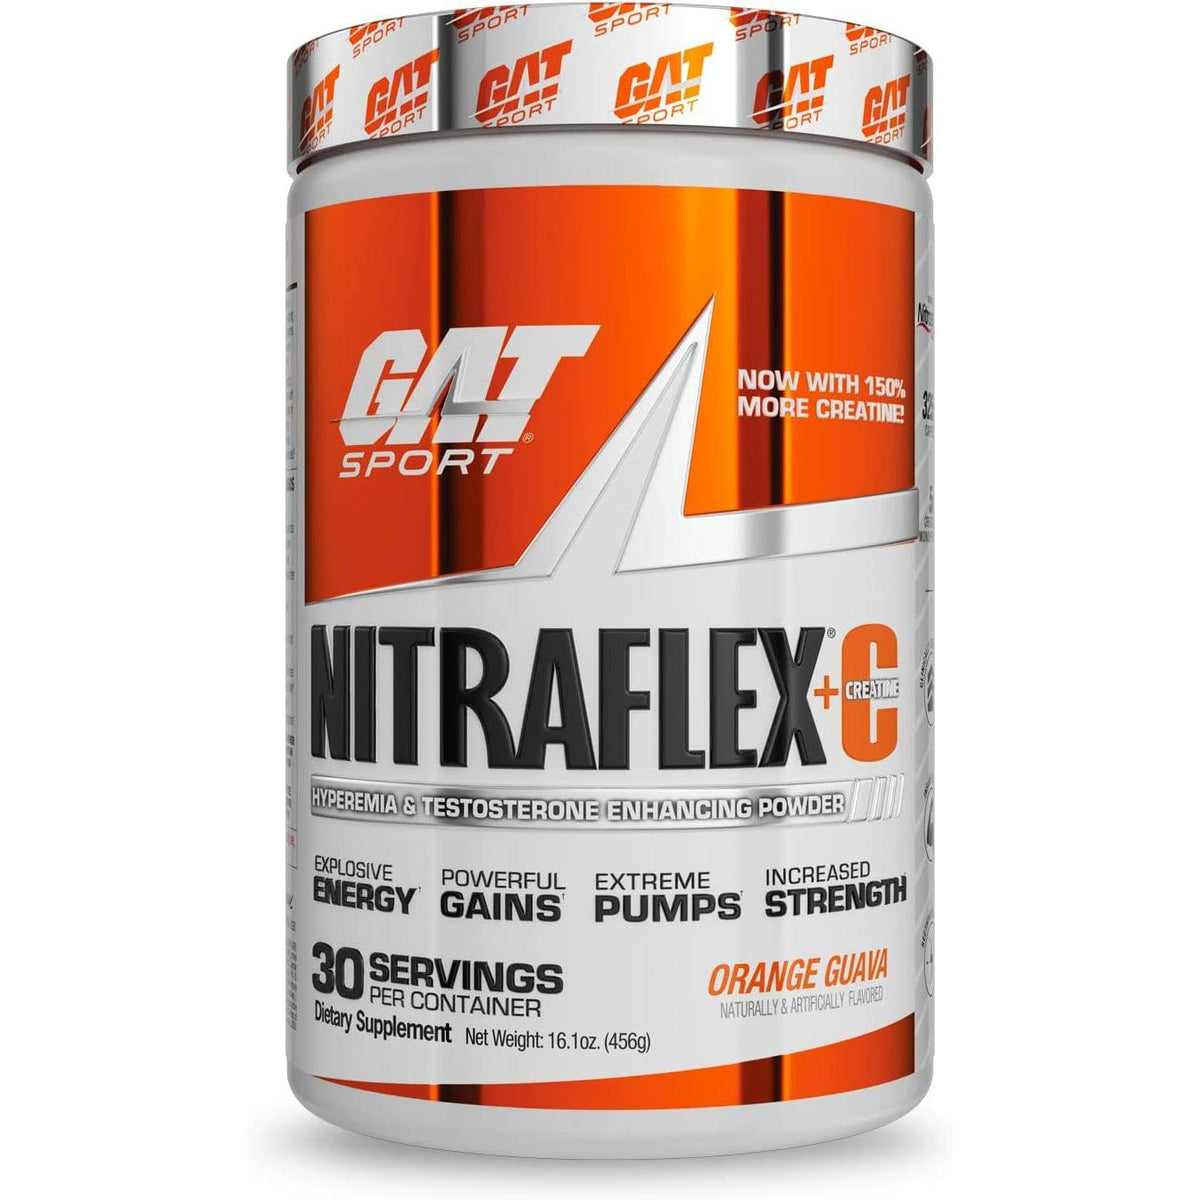 GAT Sport Nitraflex+C – N101 Nutrition